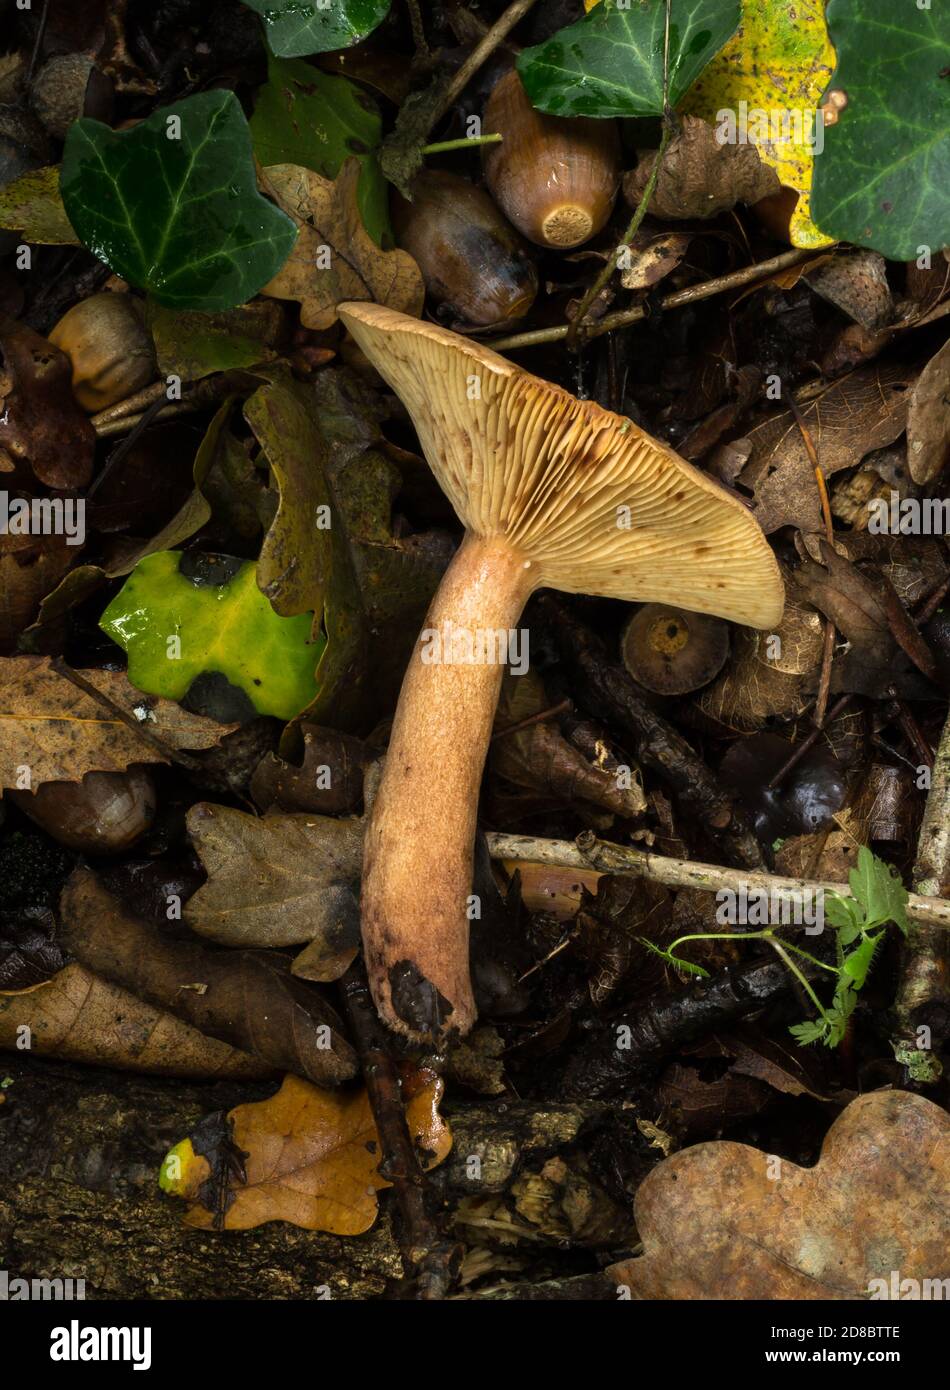 Side view of the oak milkcap mushroom or lactarius quietus. Stock Photo